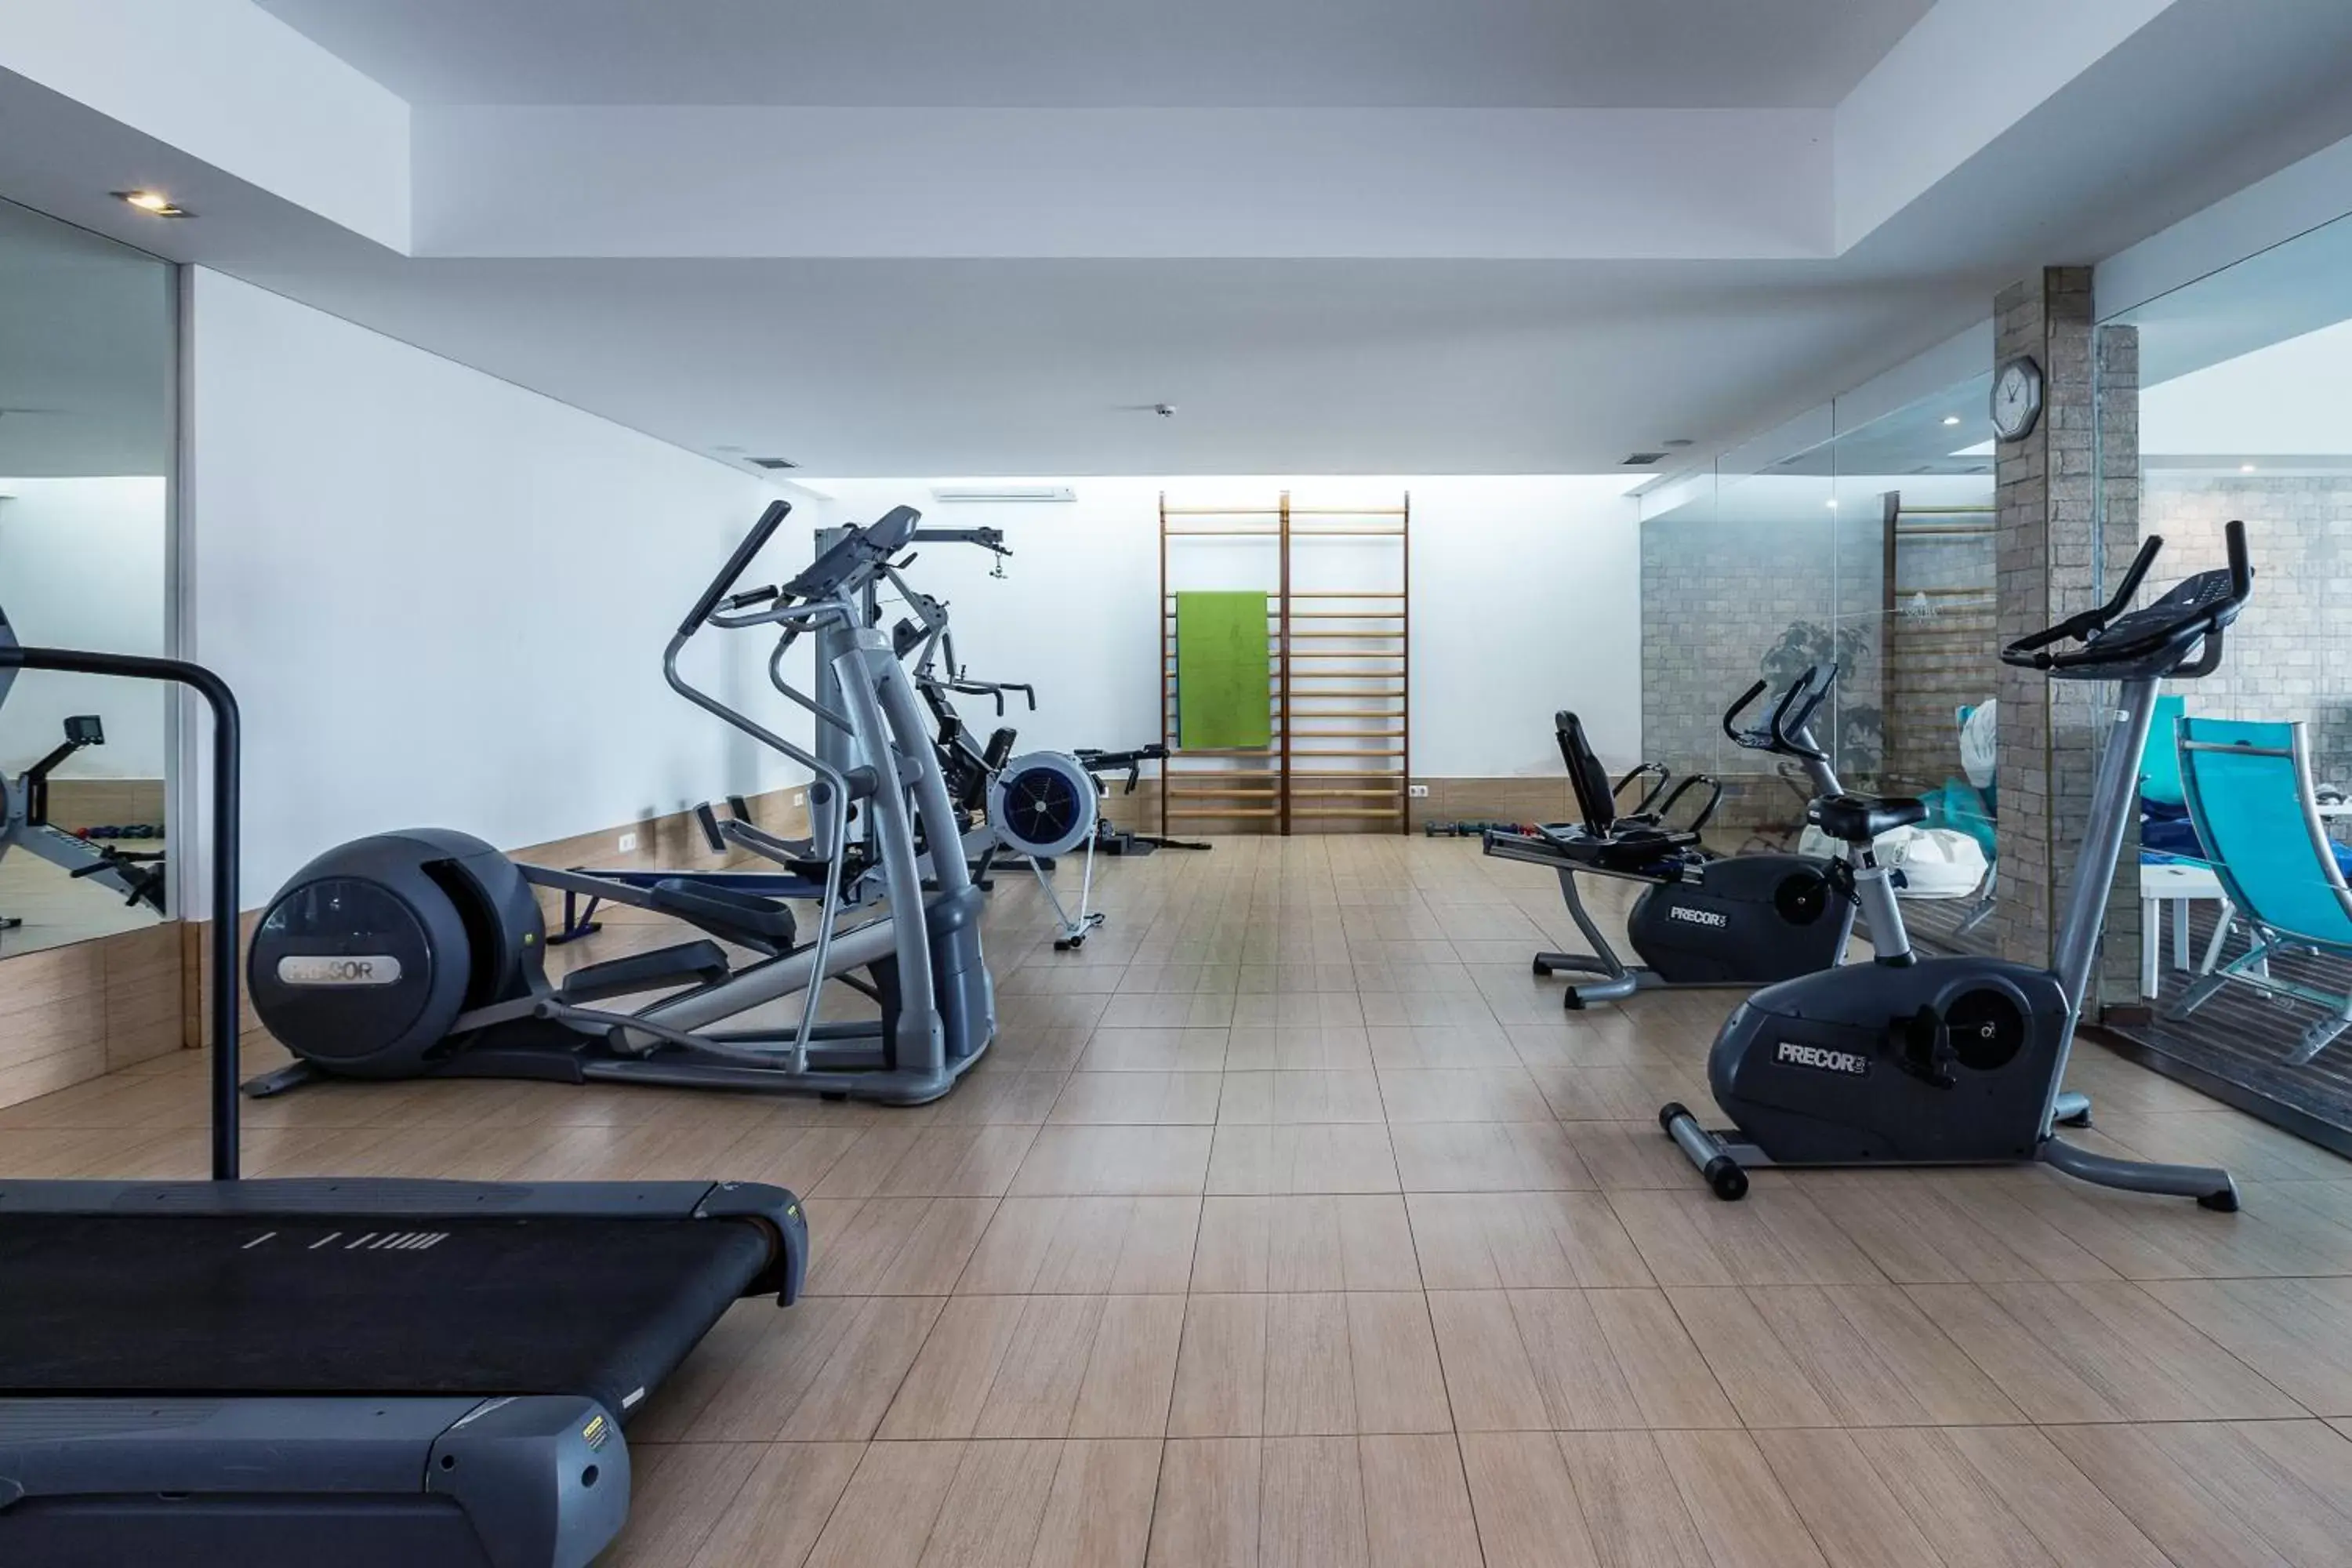 Fitness centre/facilities, Fitness Center/Facilities in Vila Alba Resort